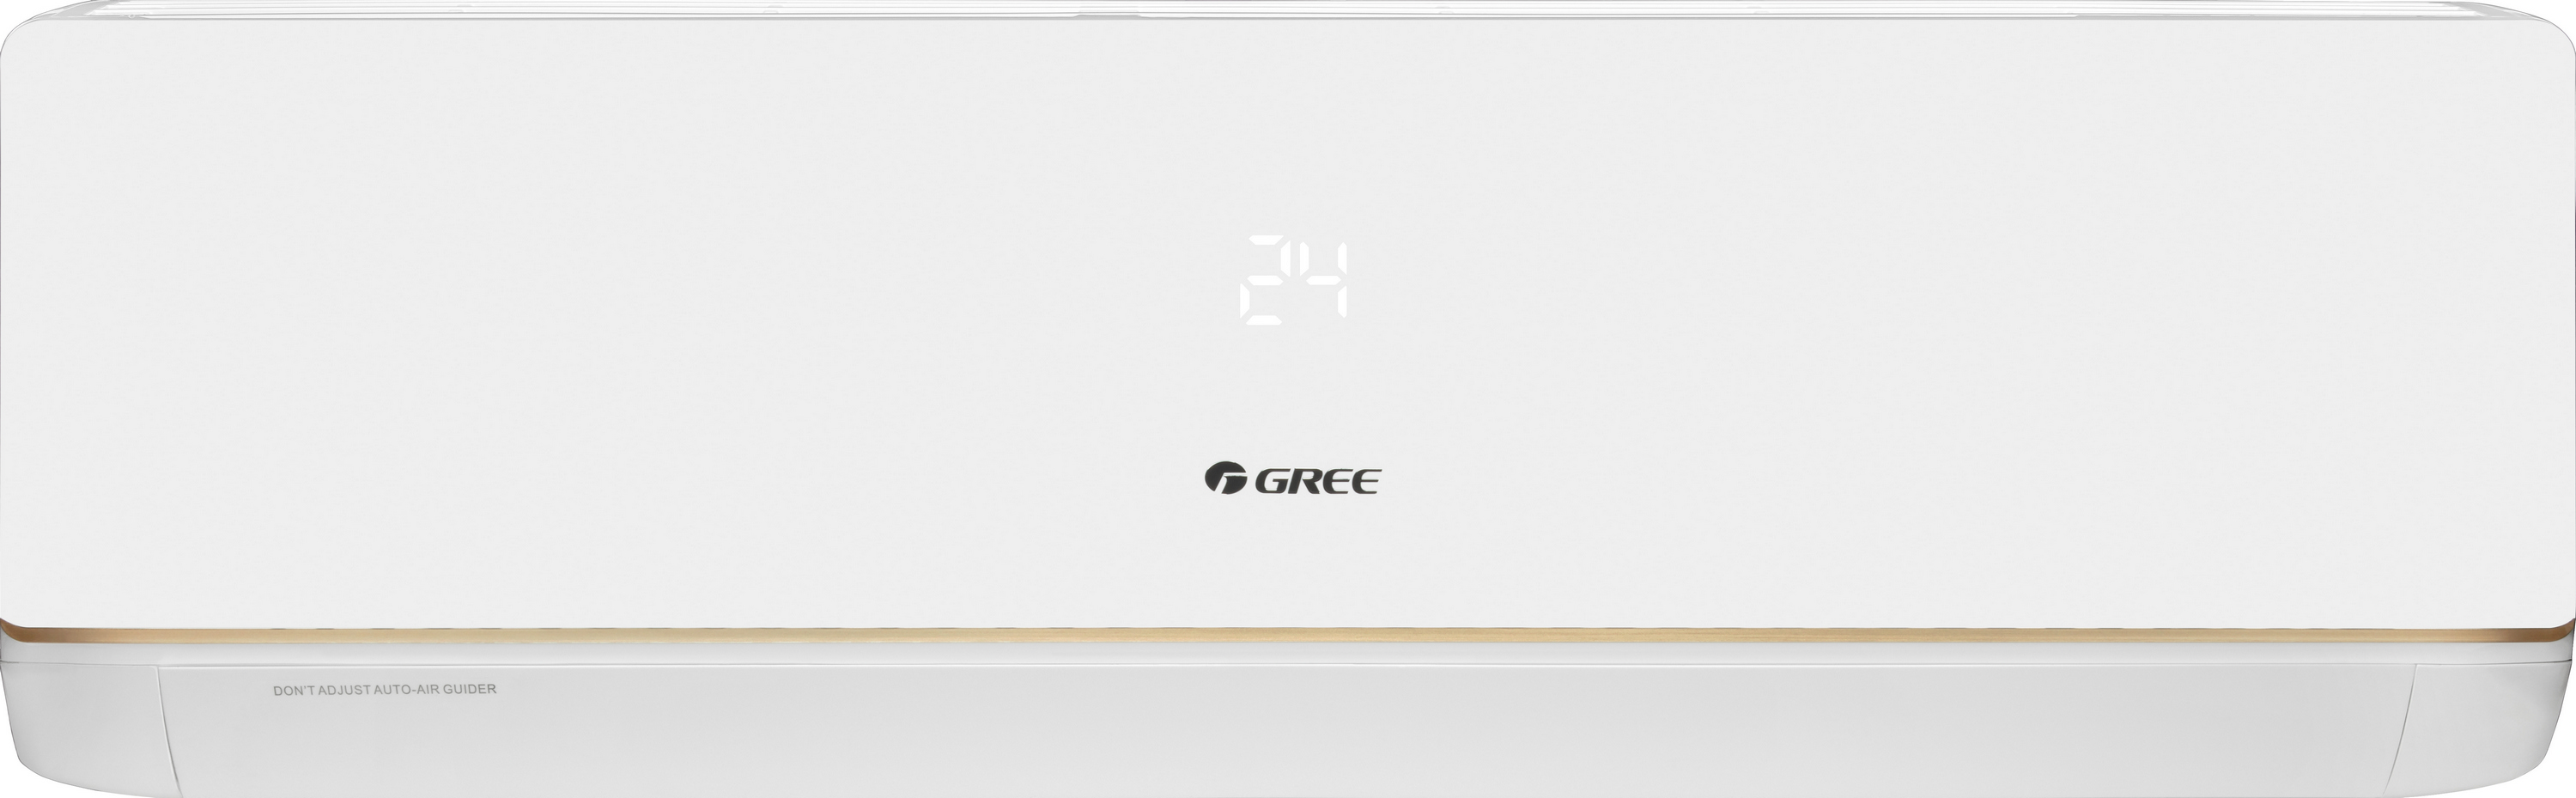 Кондиционер сплит-система Gree Bora Inverter R32 GWH18AAD-K6DNA5B Wi-Fi цена 53050.00 грн - фотография 2